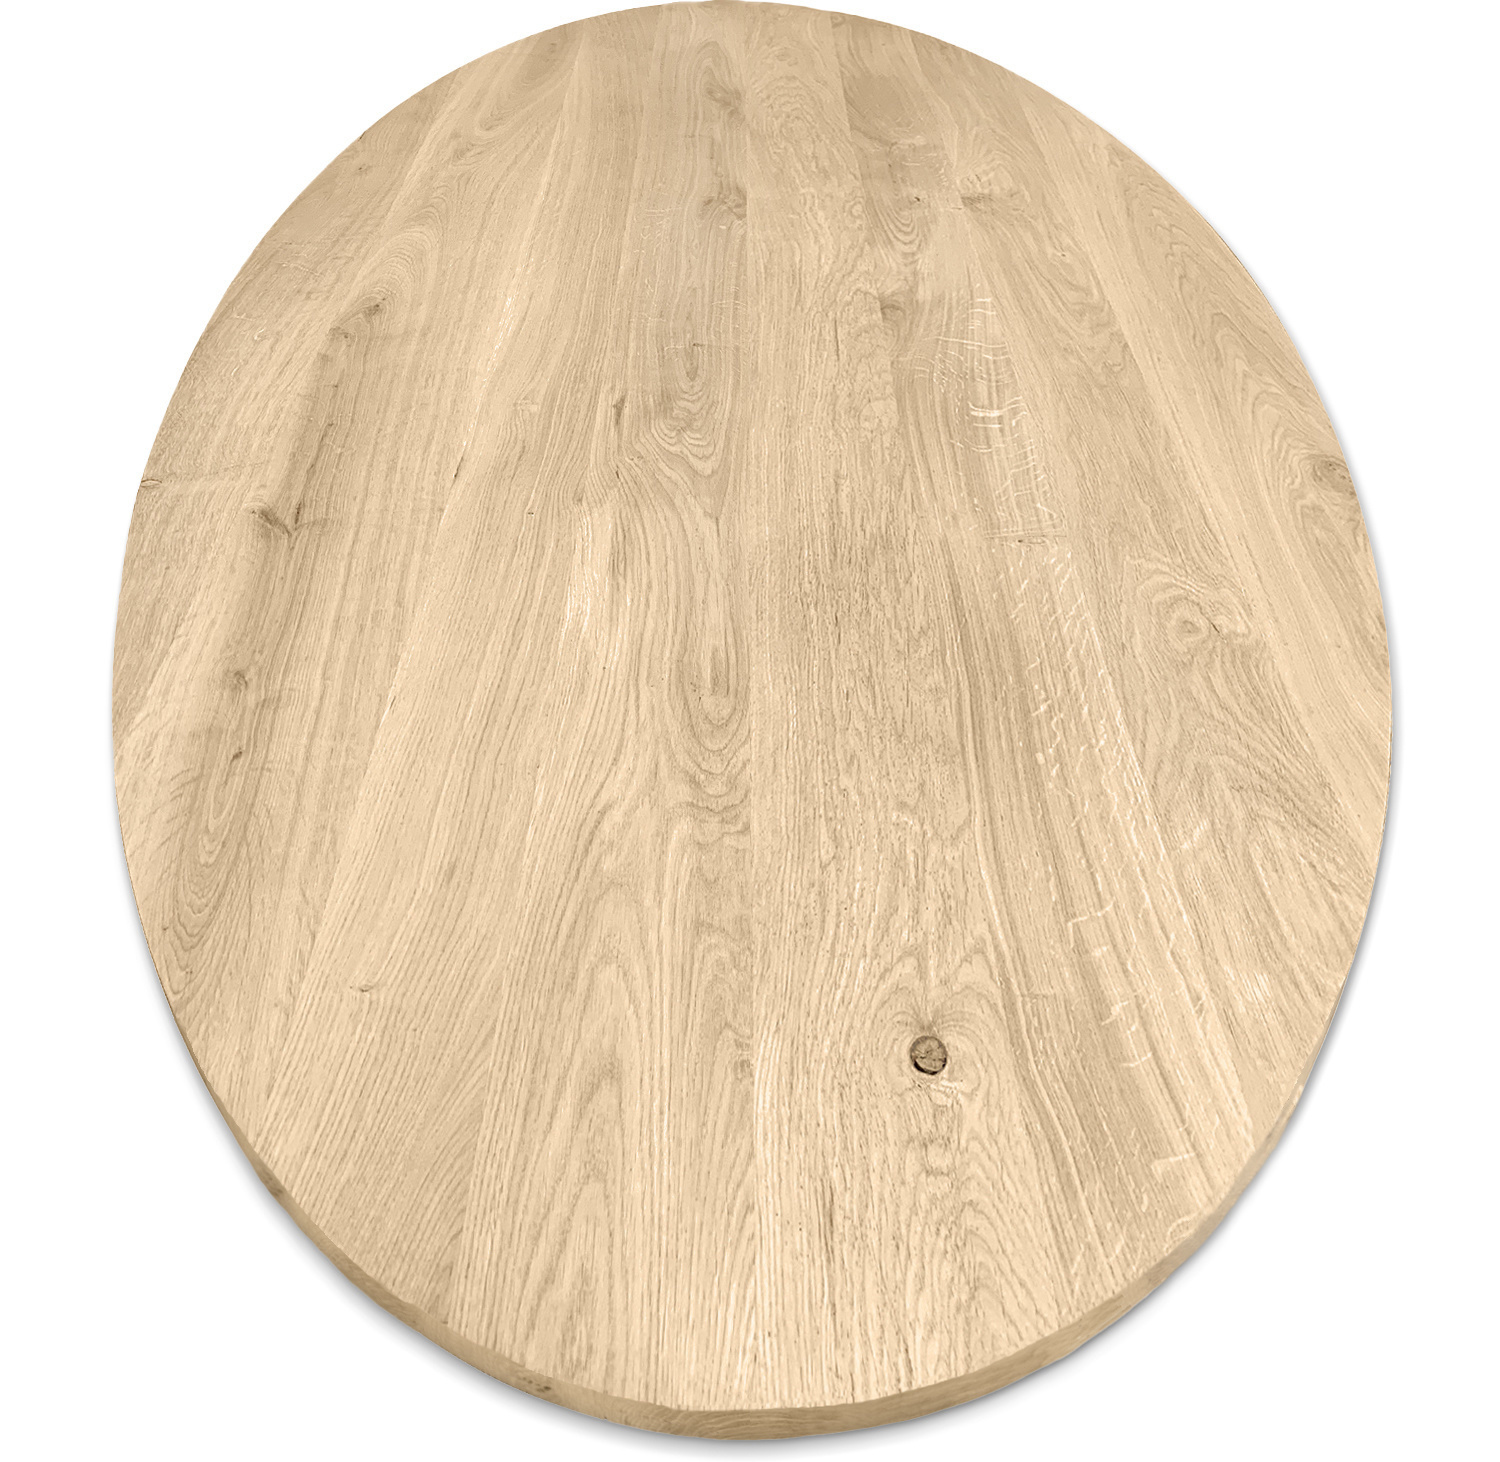  Ovaal eiken tafelblad - 2,7 cm dik (1-laag) - Diverse afmetingen - rustiek Europees eikenhout - met brede lamellen (circa 10-12 cm) - verlijmd kd 8-12%